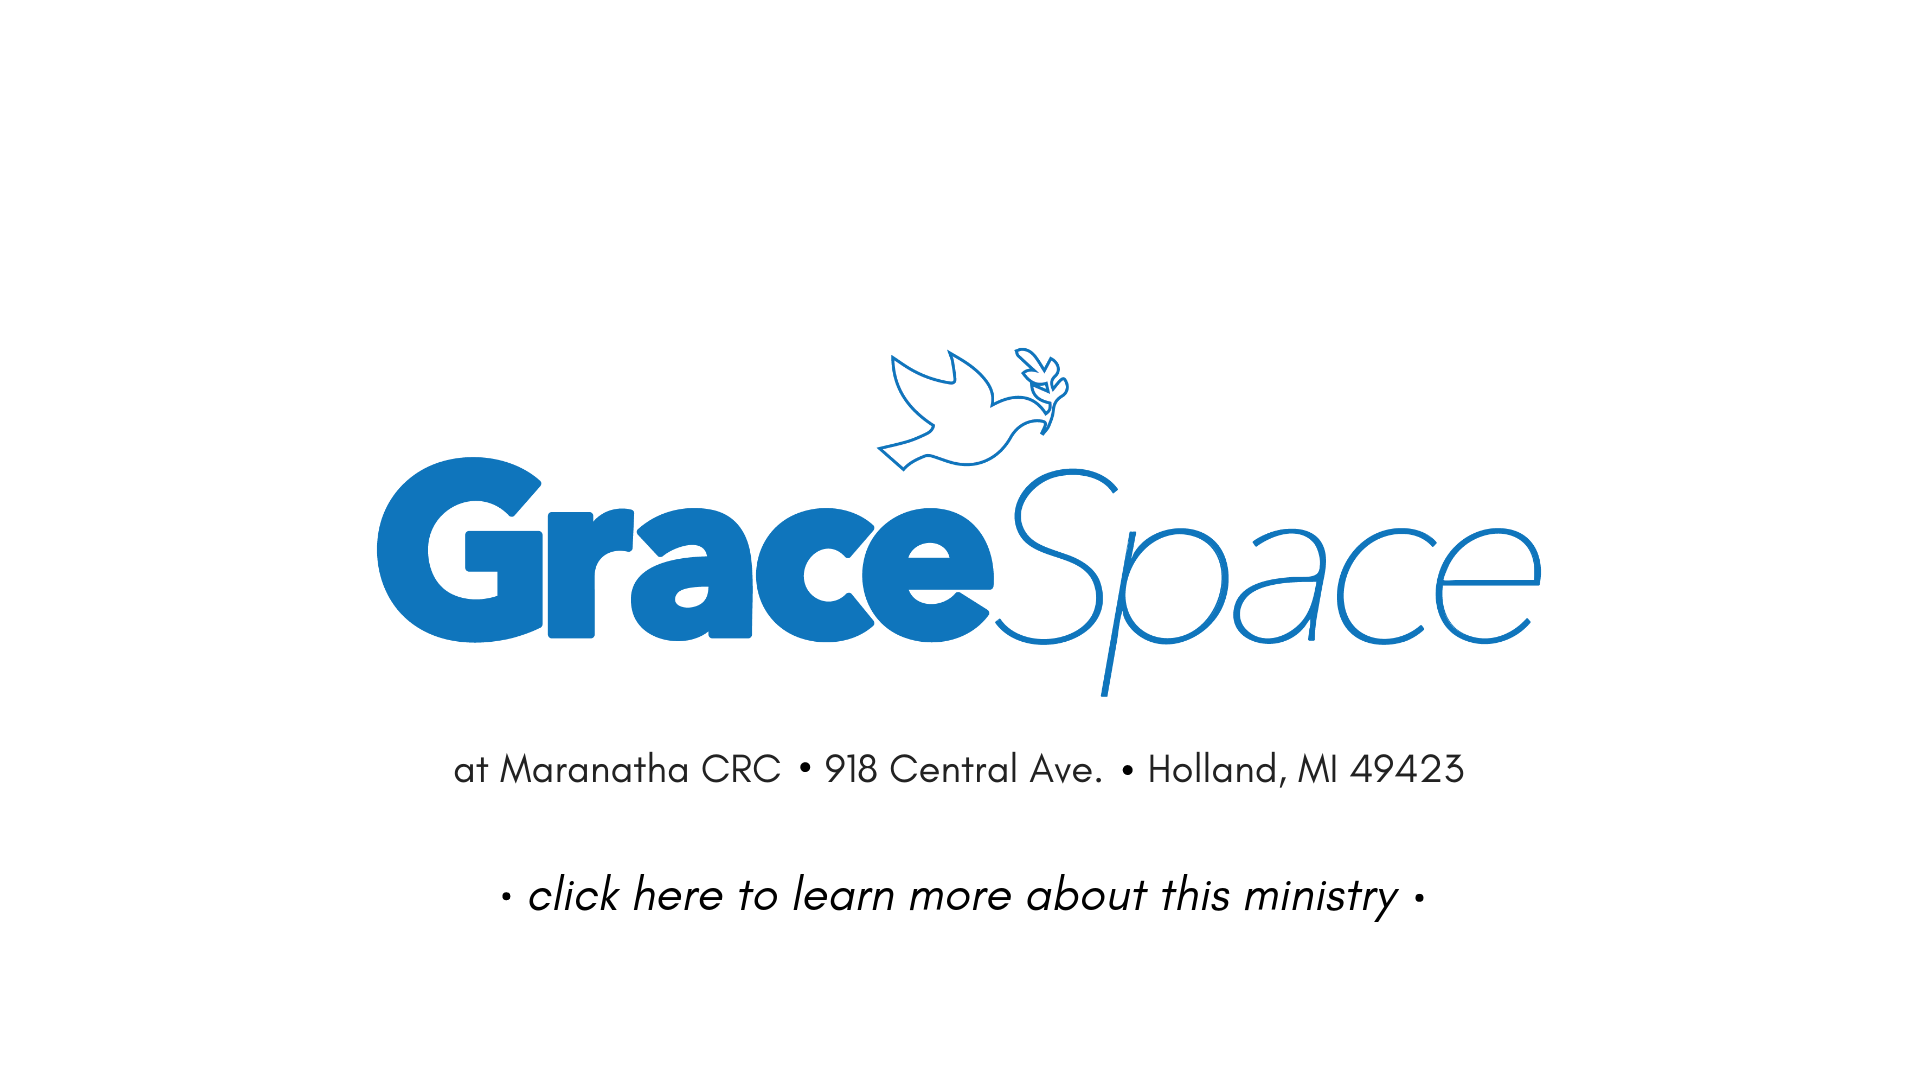 Grace Space - slide on website.png